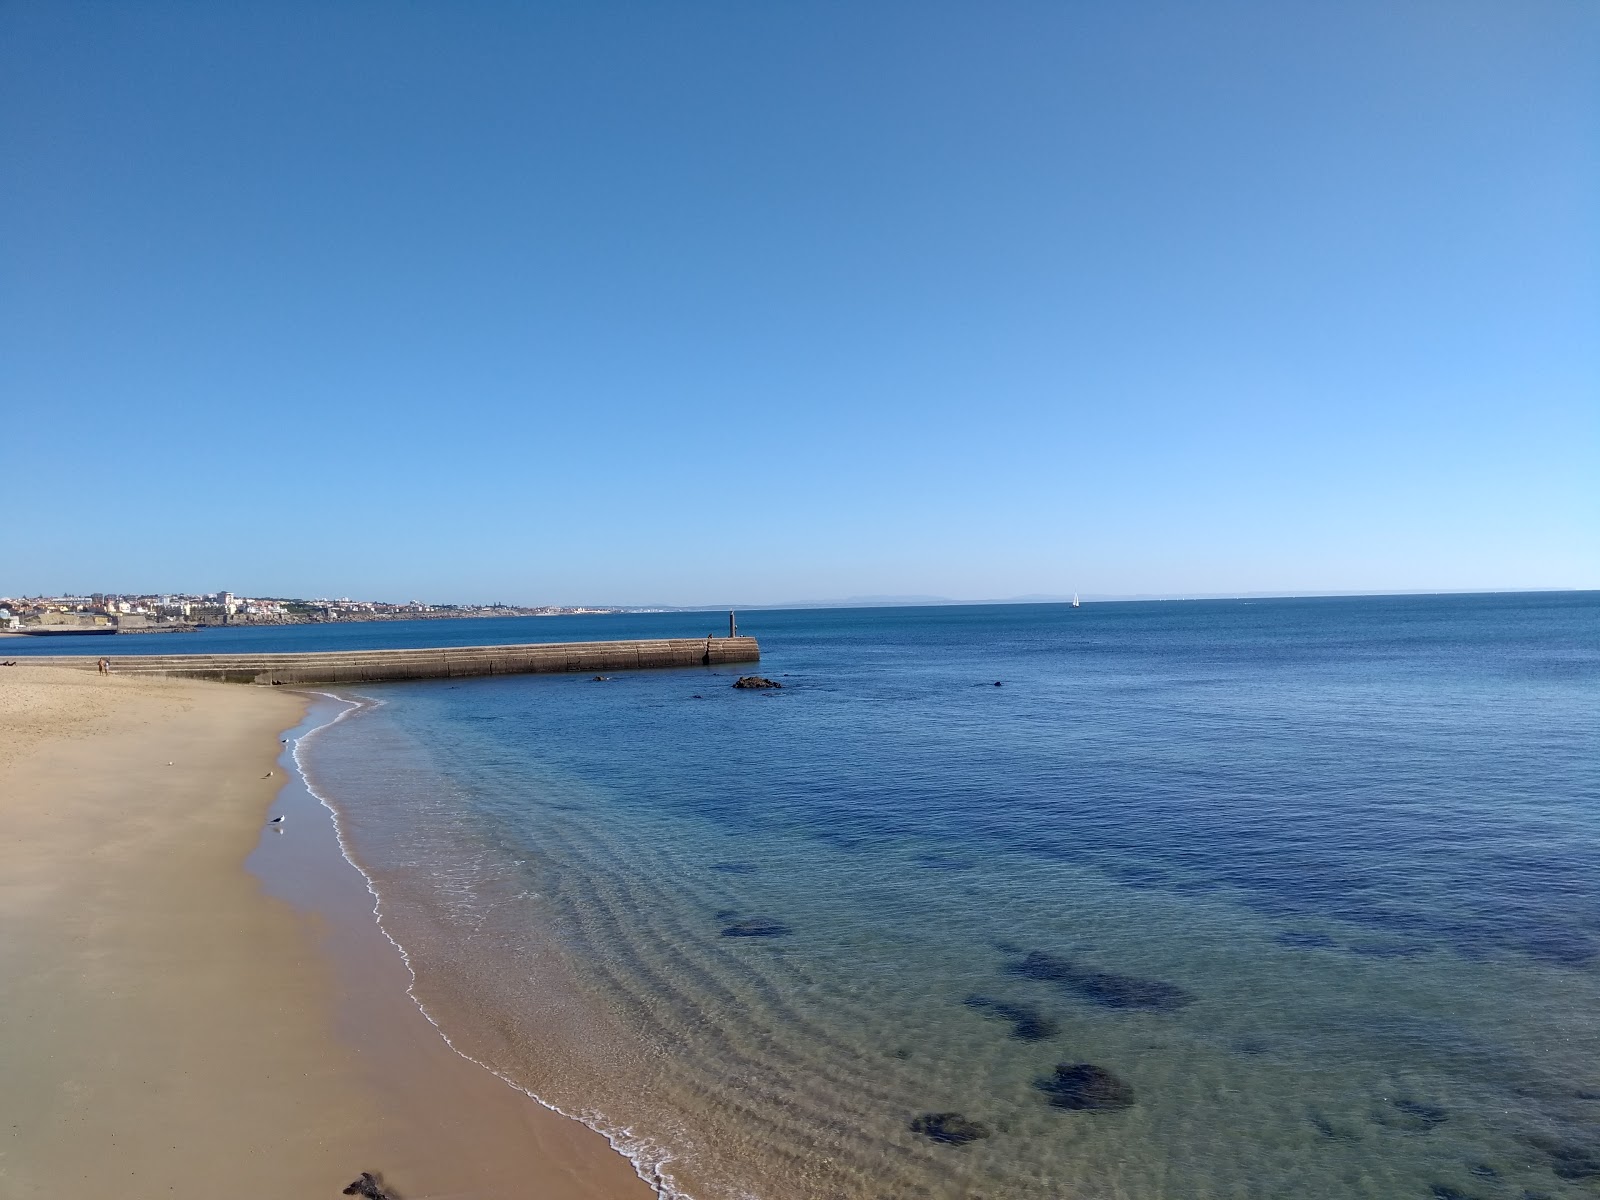 Praia das Moitas'in fotoğrafı geniş plaj ile birlikte